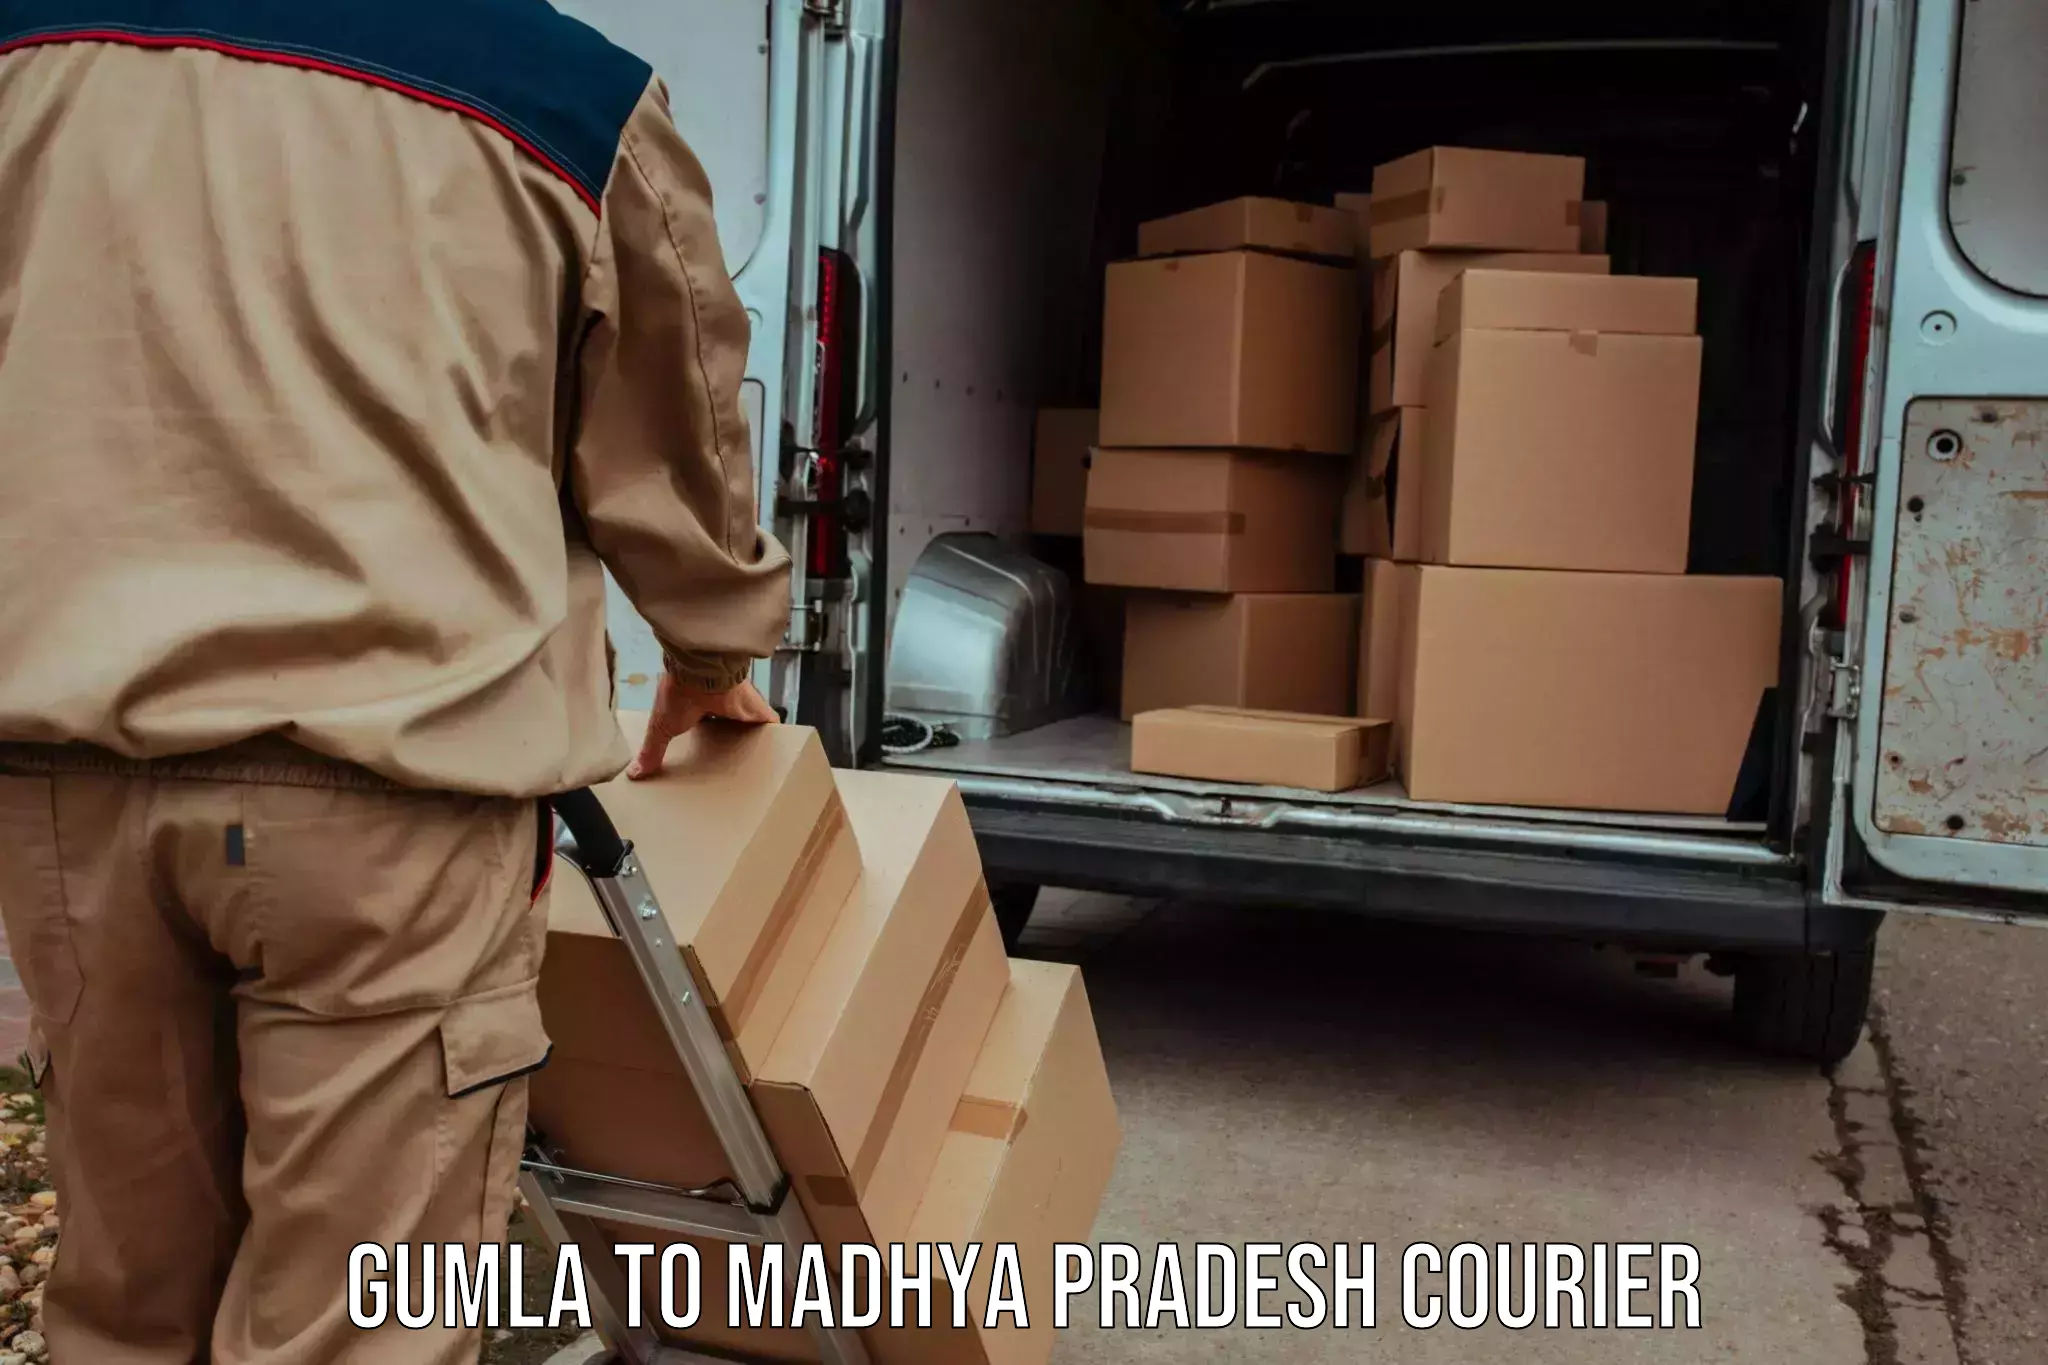 Customer-focused courier Gumla to Hatta